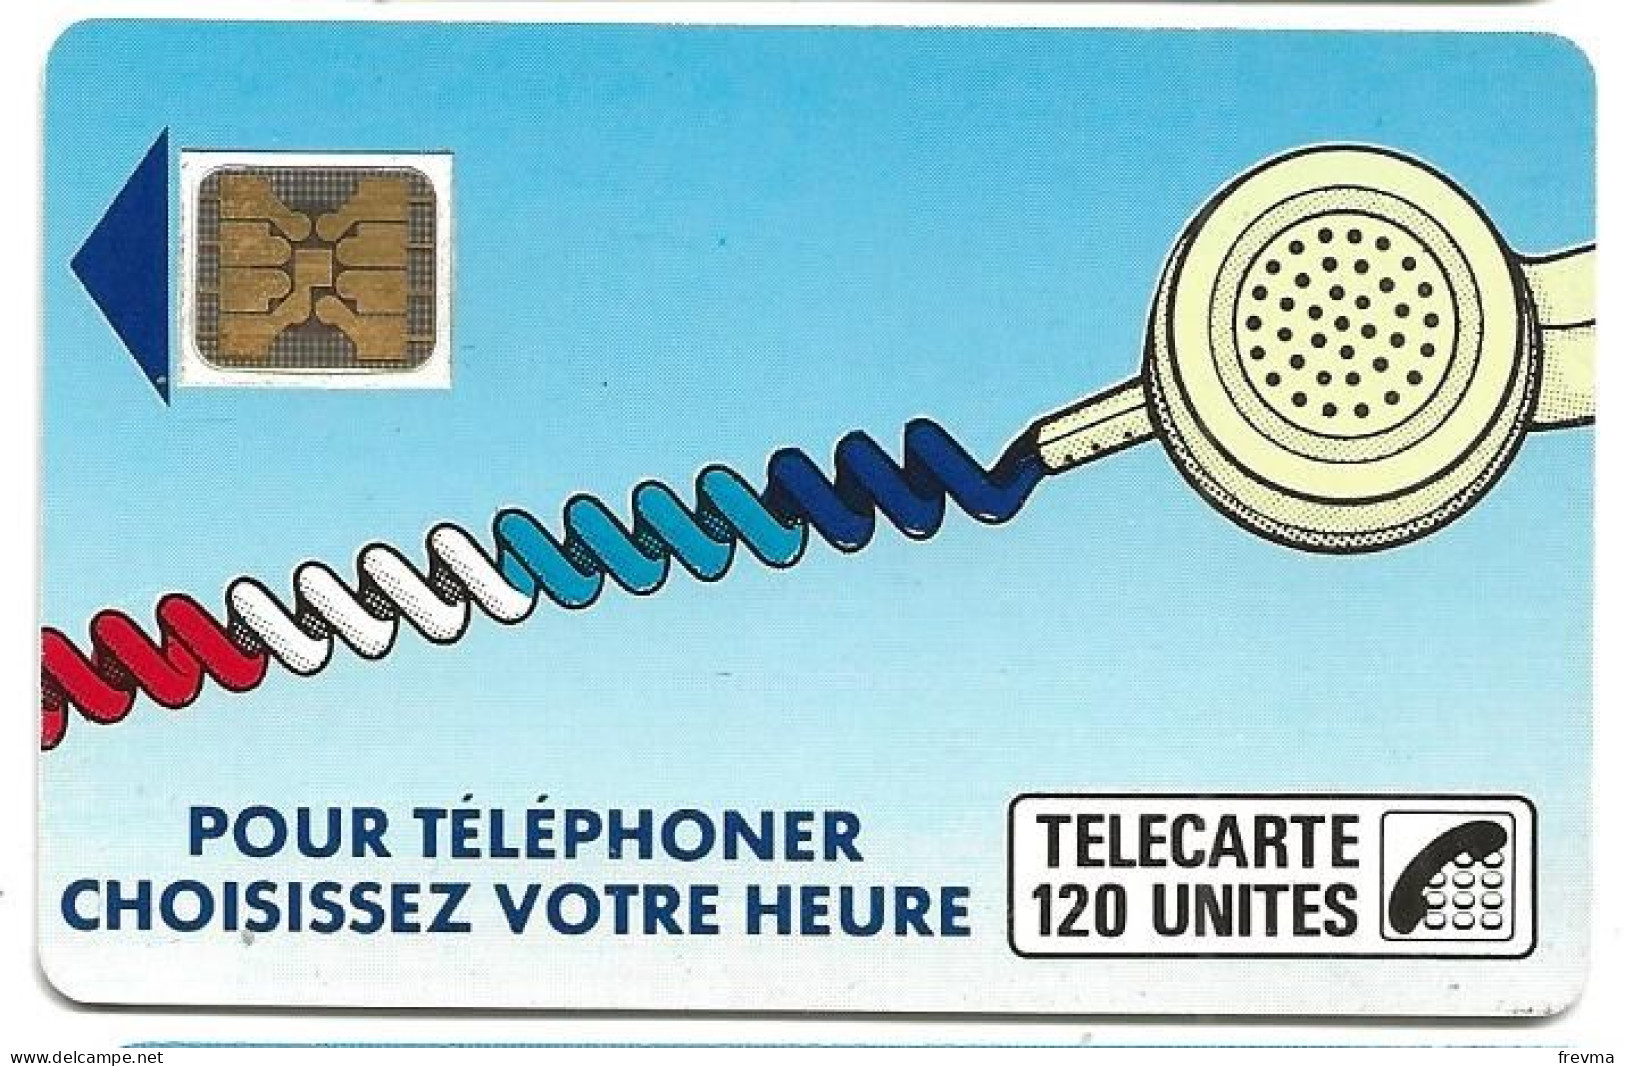 Telecarte K 10A 120 Unités SC4on - Cordons'